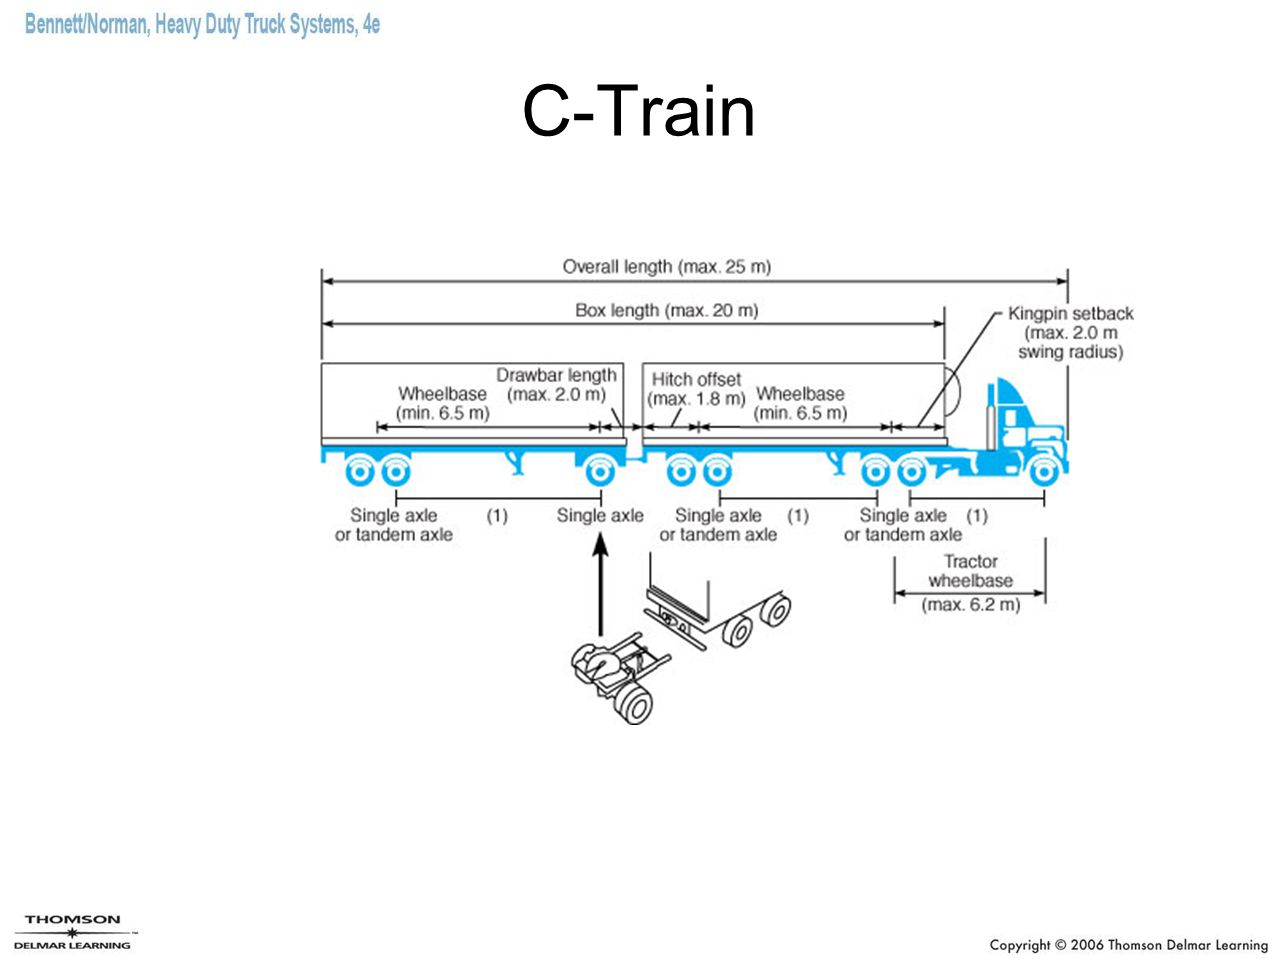 C-Train